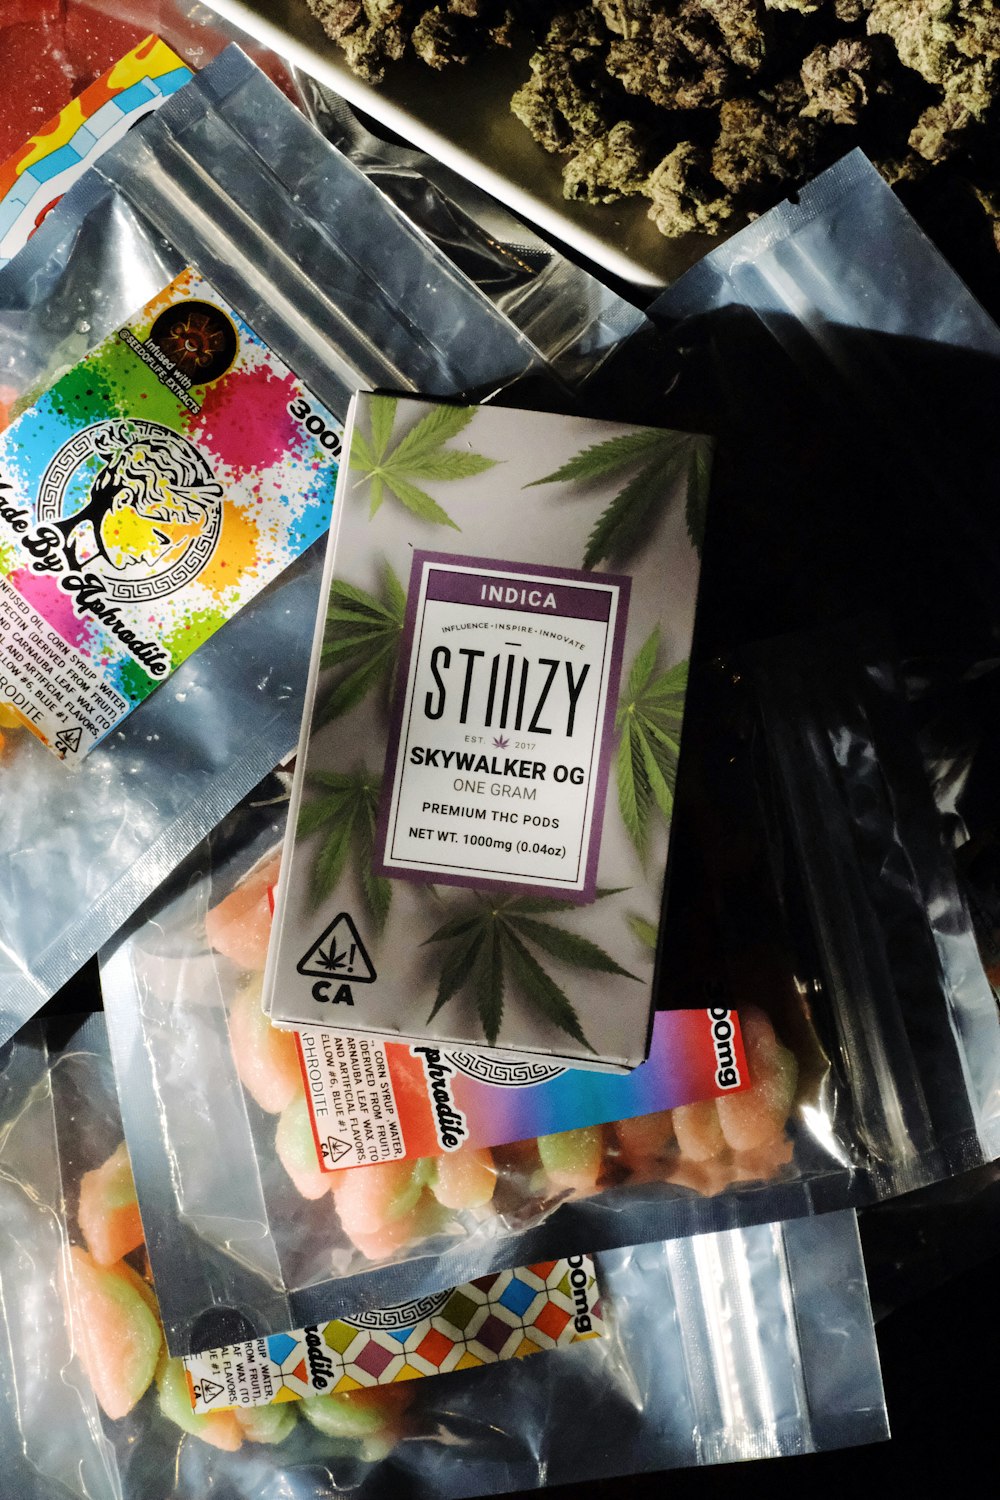 Un paquete de marihuana encima de una bolsa de plástico